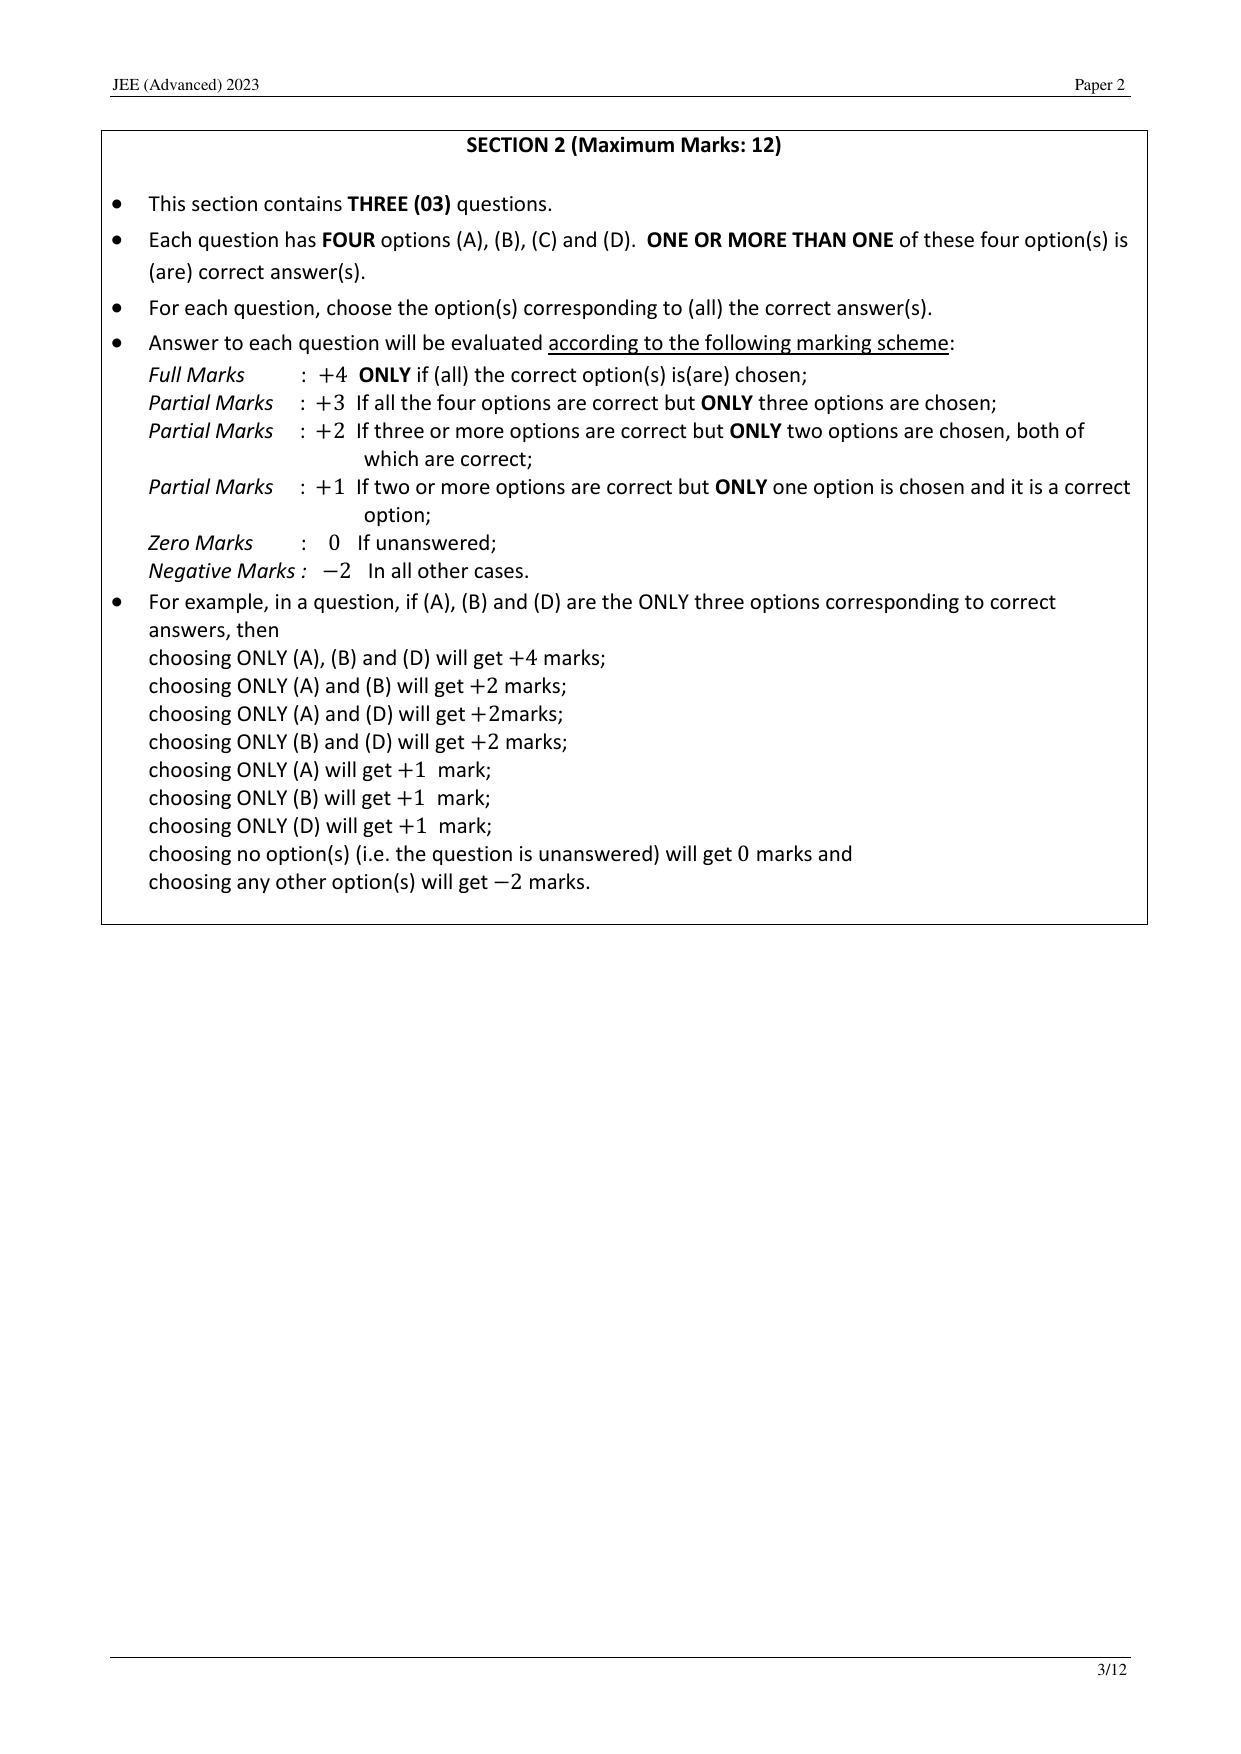 JEE (Advanced) 2023 Paper II - Mathematics Answer Key - Page 12